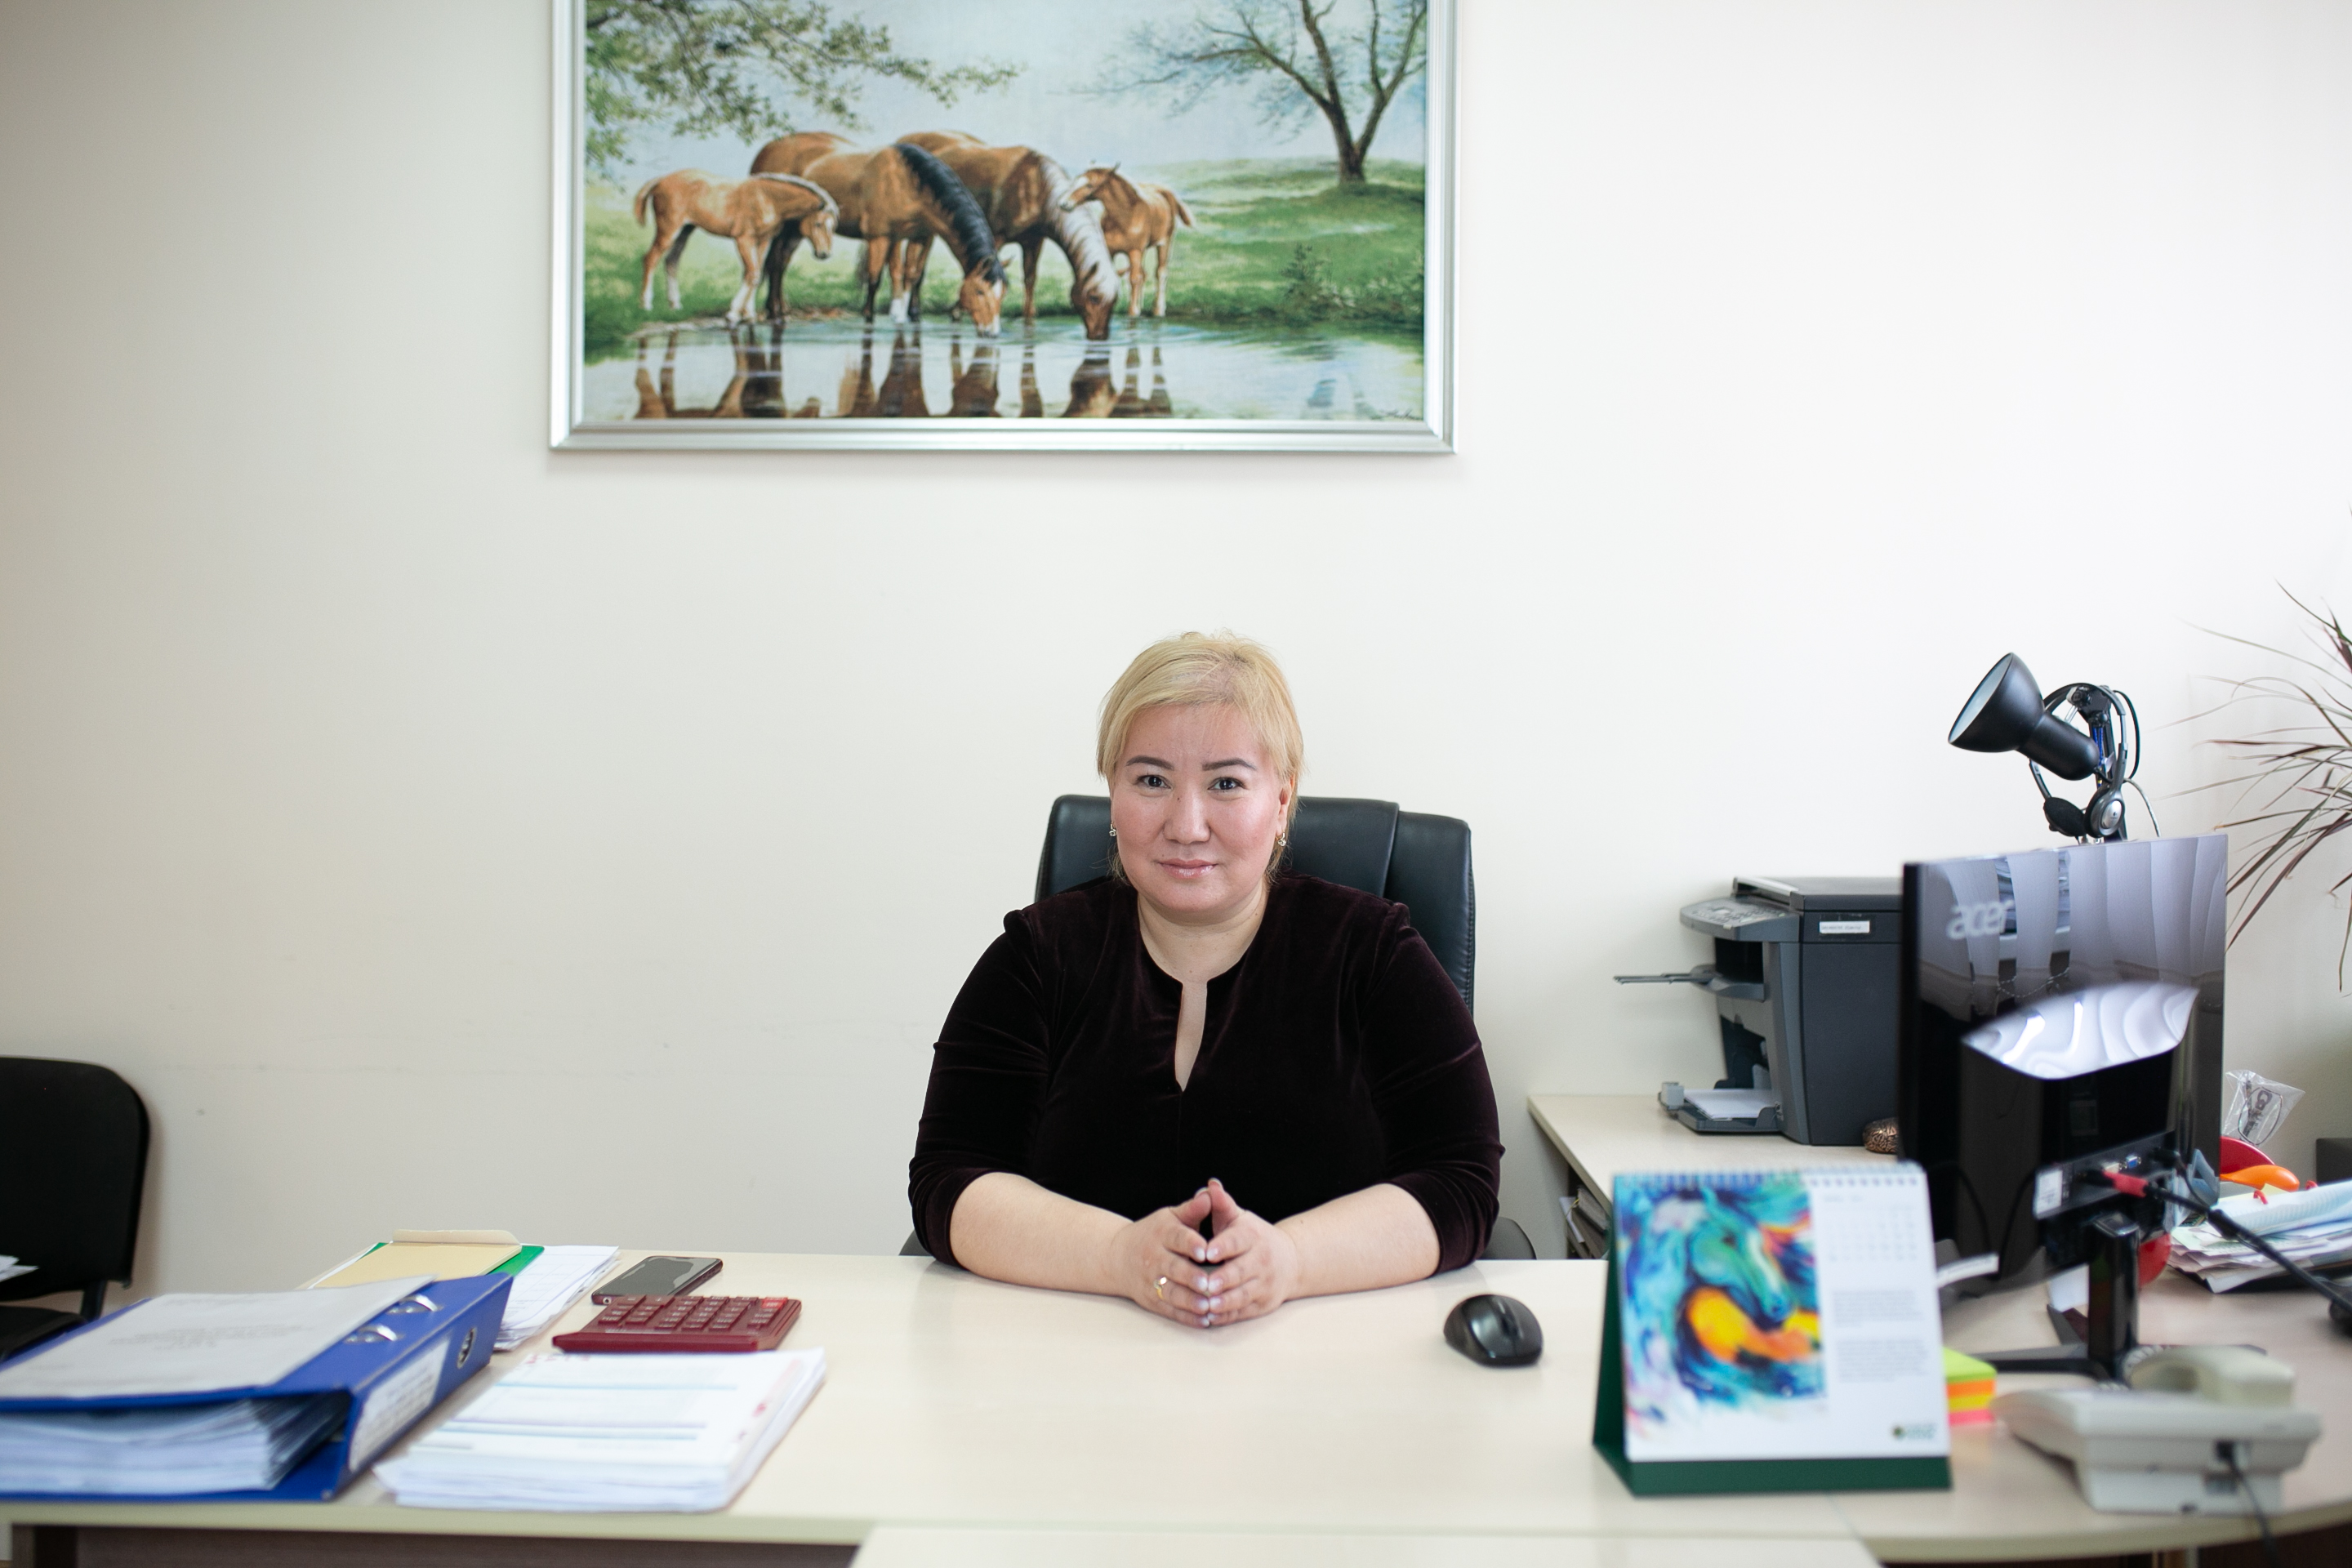  Медициналық колледждің бас есепшісі- Сыздыкова Махаббат Серікқызы 